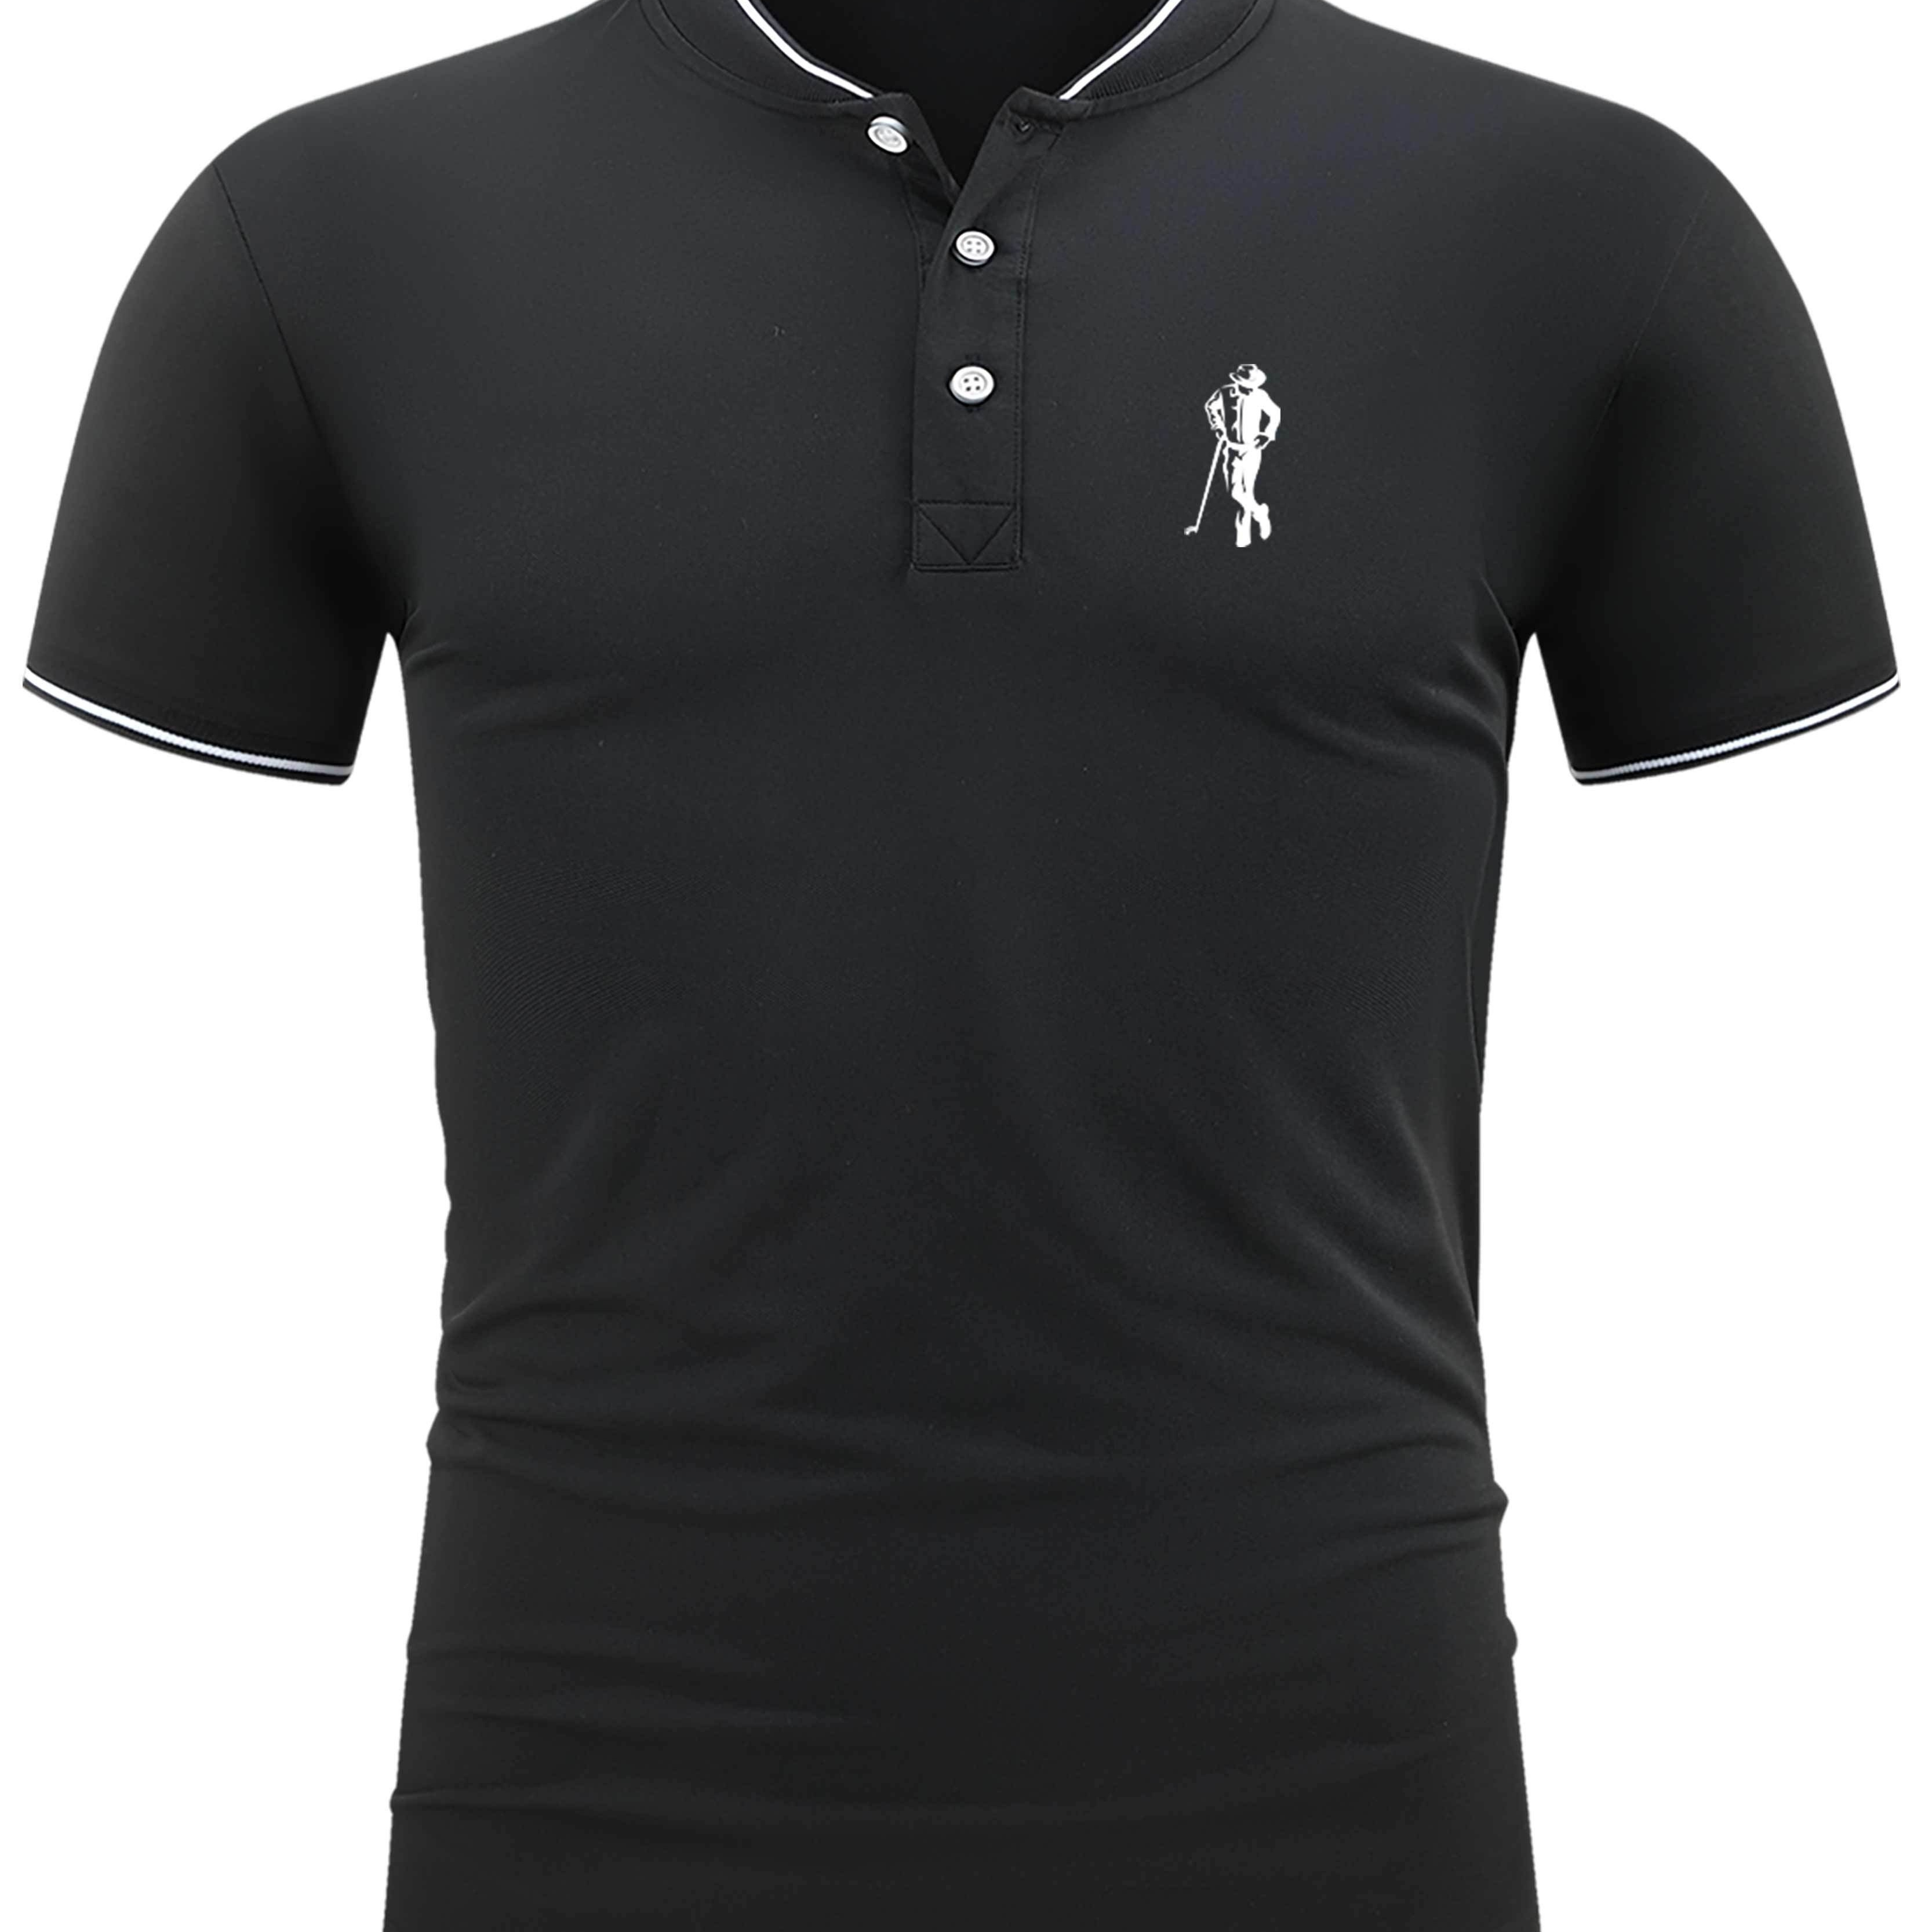 

Men's Golf Shirt, Gentleman Print Short Sleeve Breathable Tennis Shirt, Business Casual, Moisture Wicking